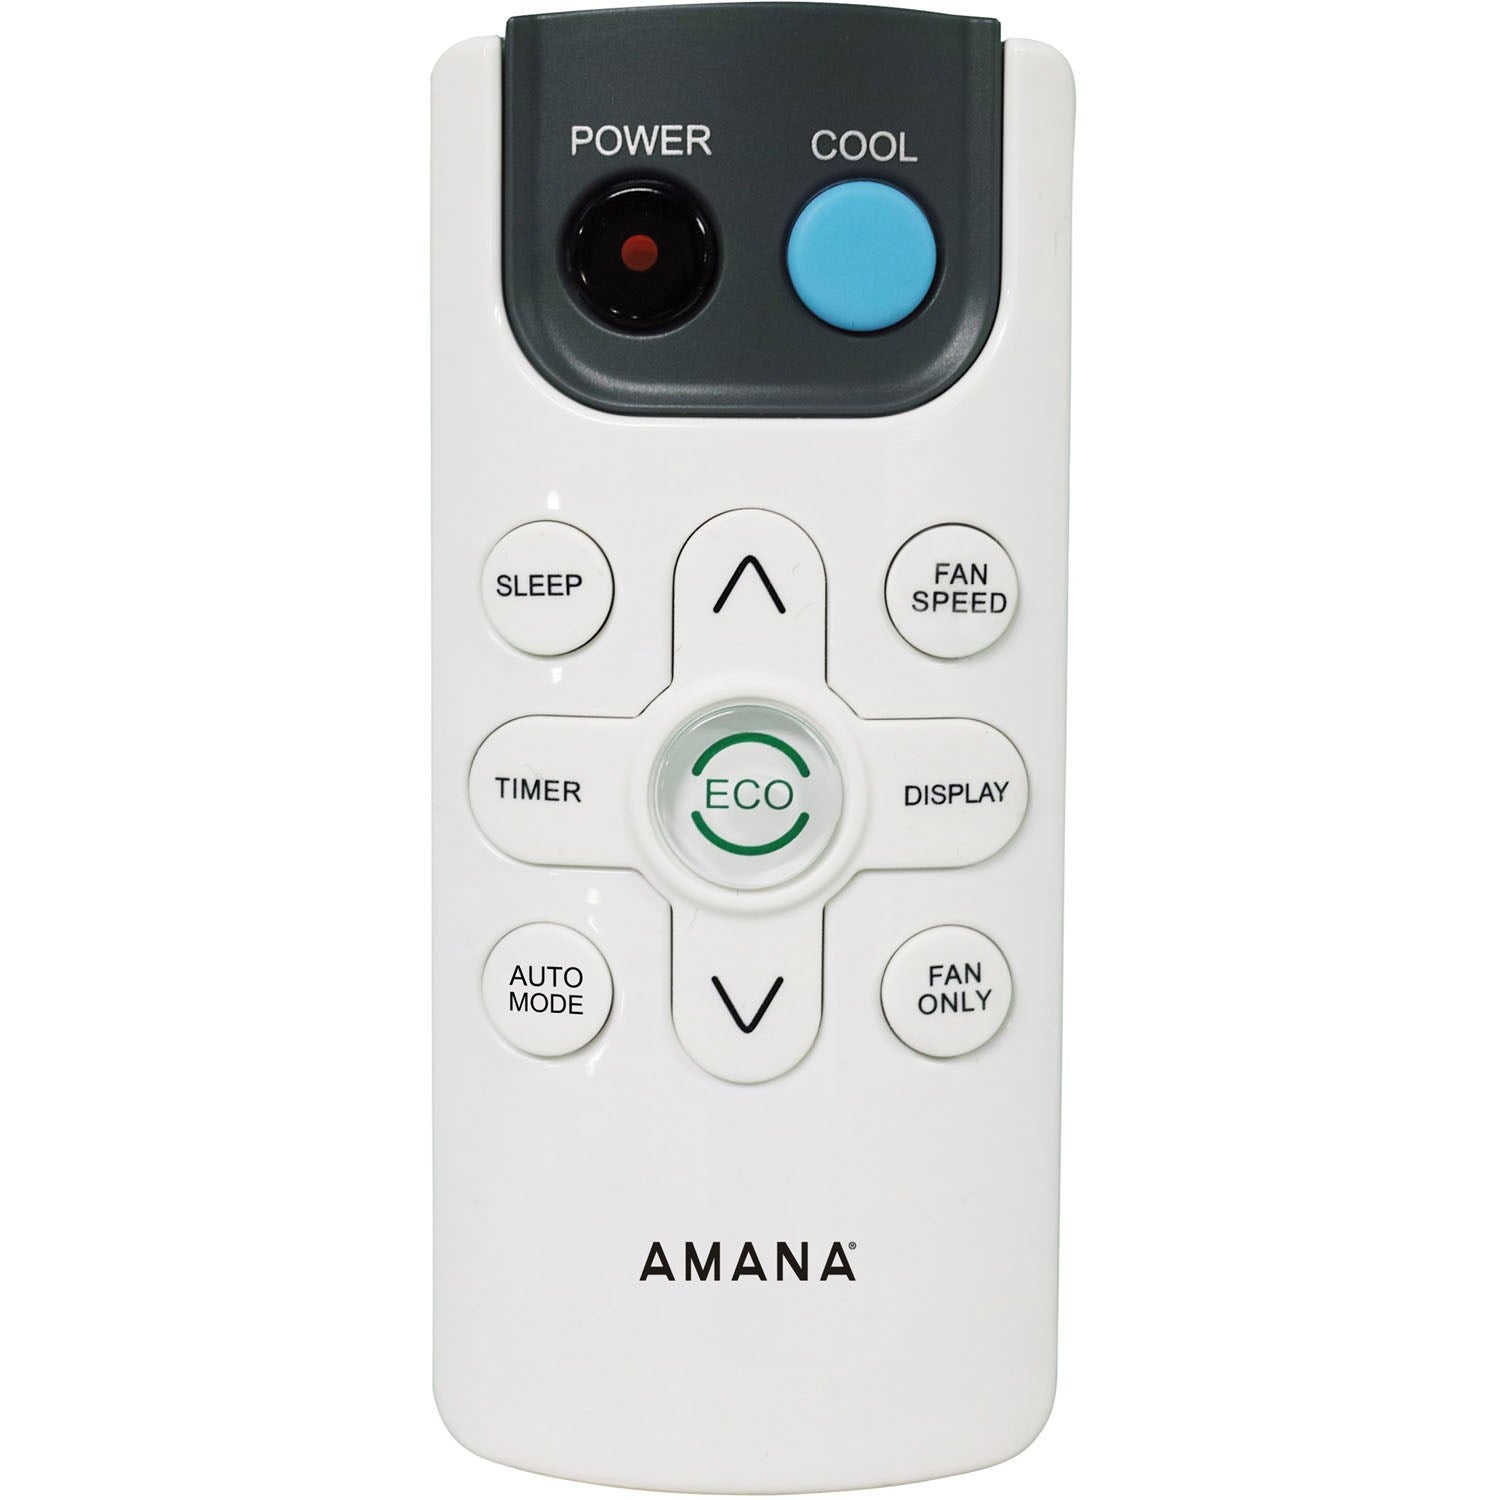 Amana - 10,000 BTU Window AC with Electronic Controls - AMAP101BW